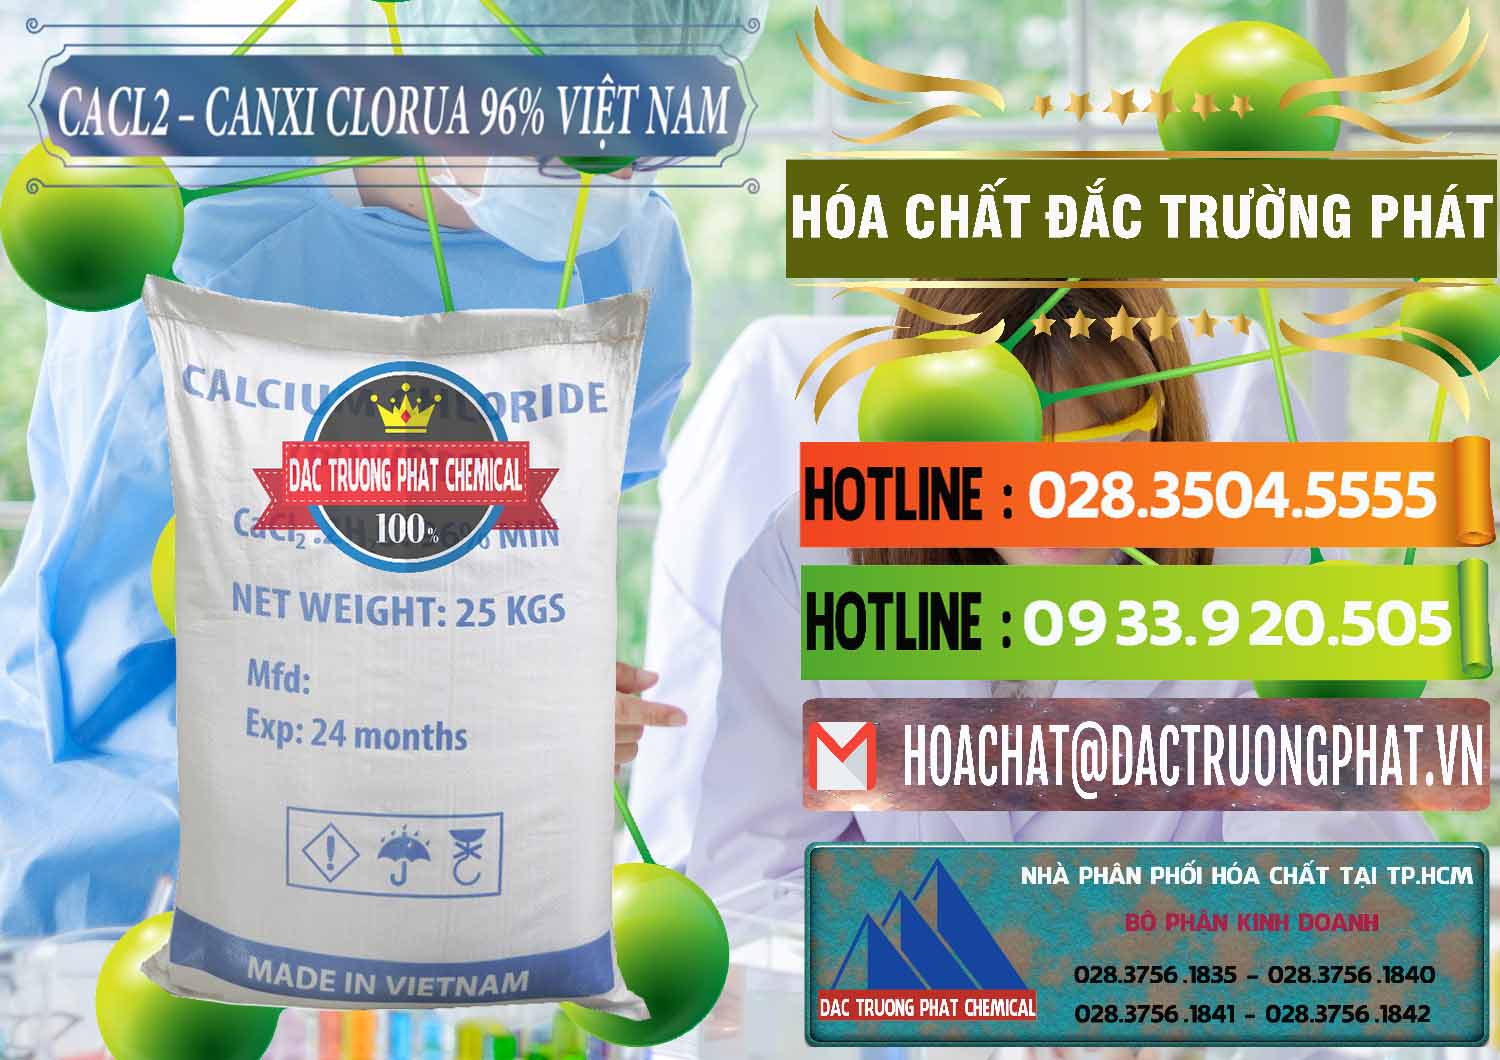 Chuyên cung cấp & bán CaCl2 – Canxi Clorua 96% Việt Nam - 0236 - Chuyên cung ứng ( bán ) hóa chất tại TP.HCM - cungcaphoachat.com.vn